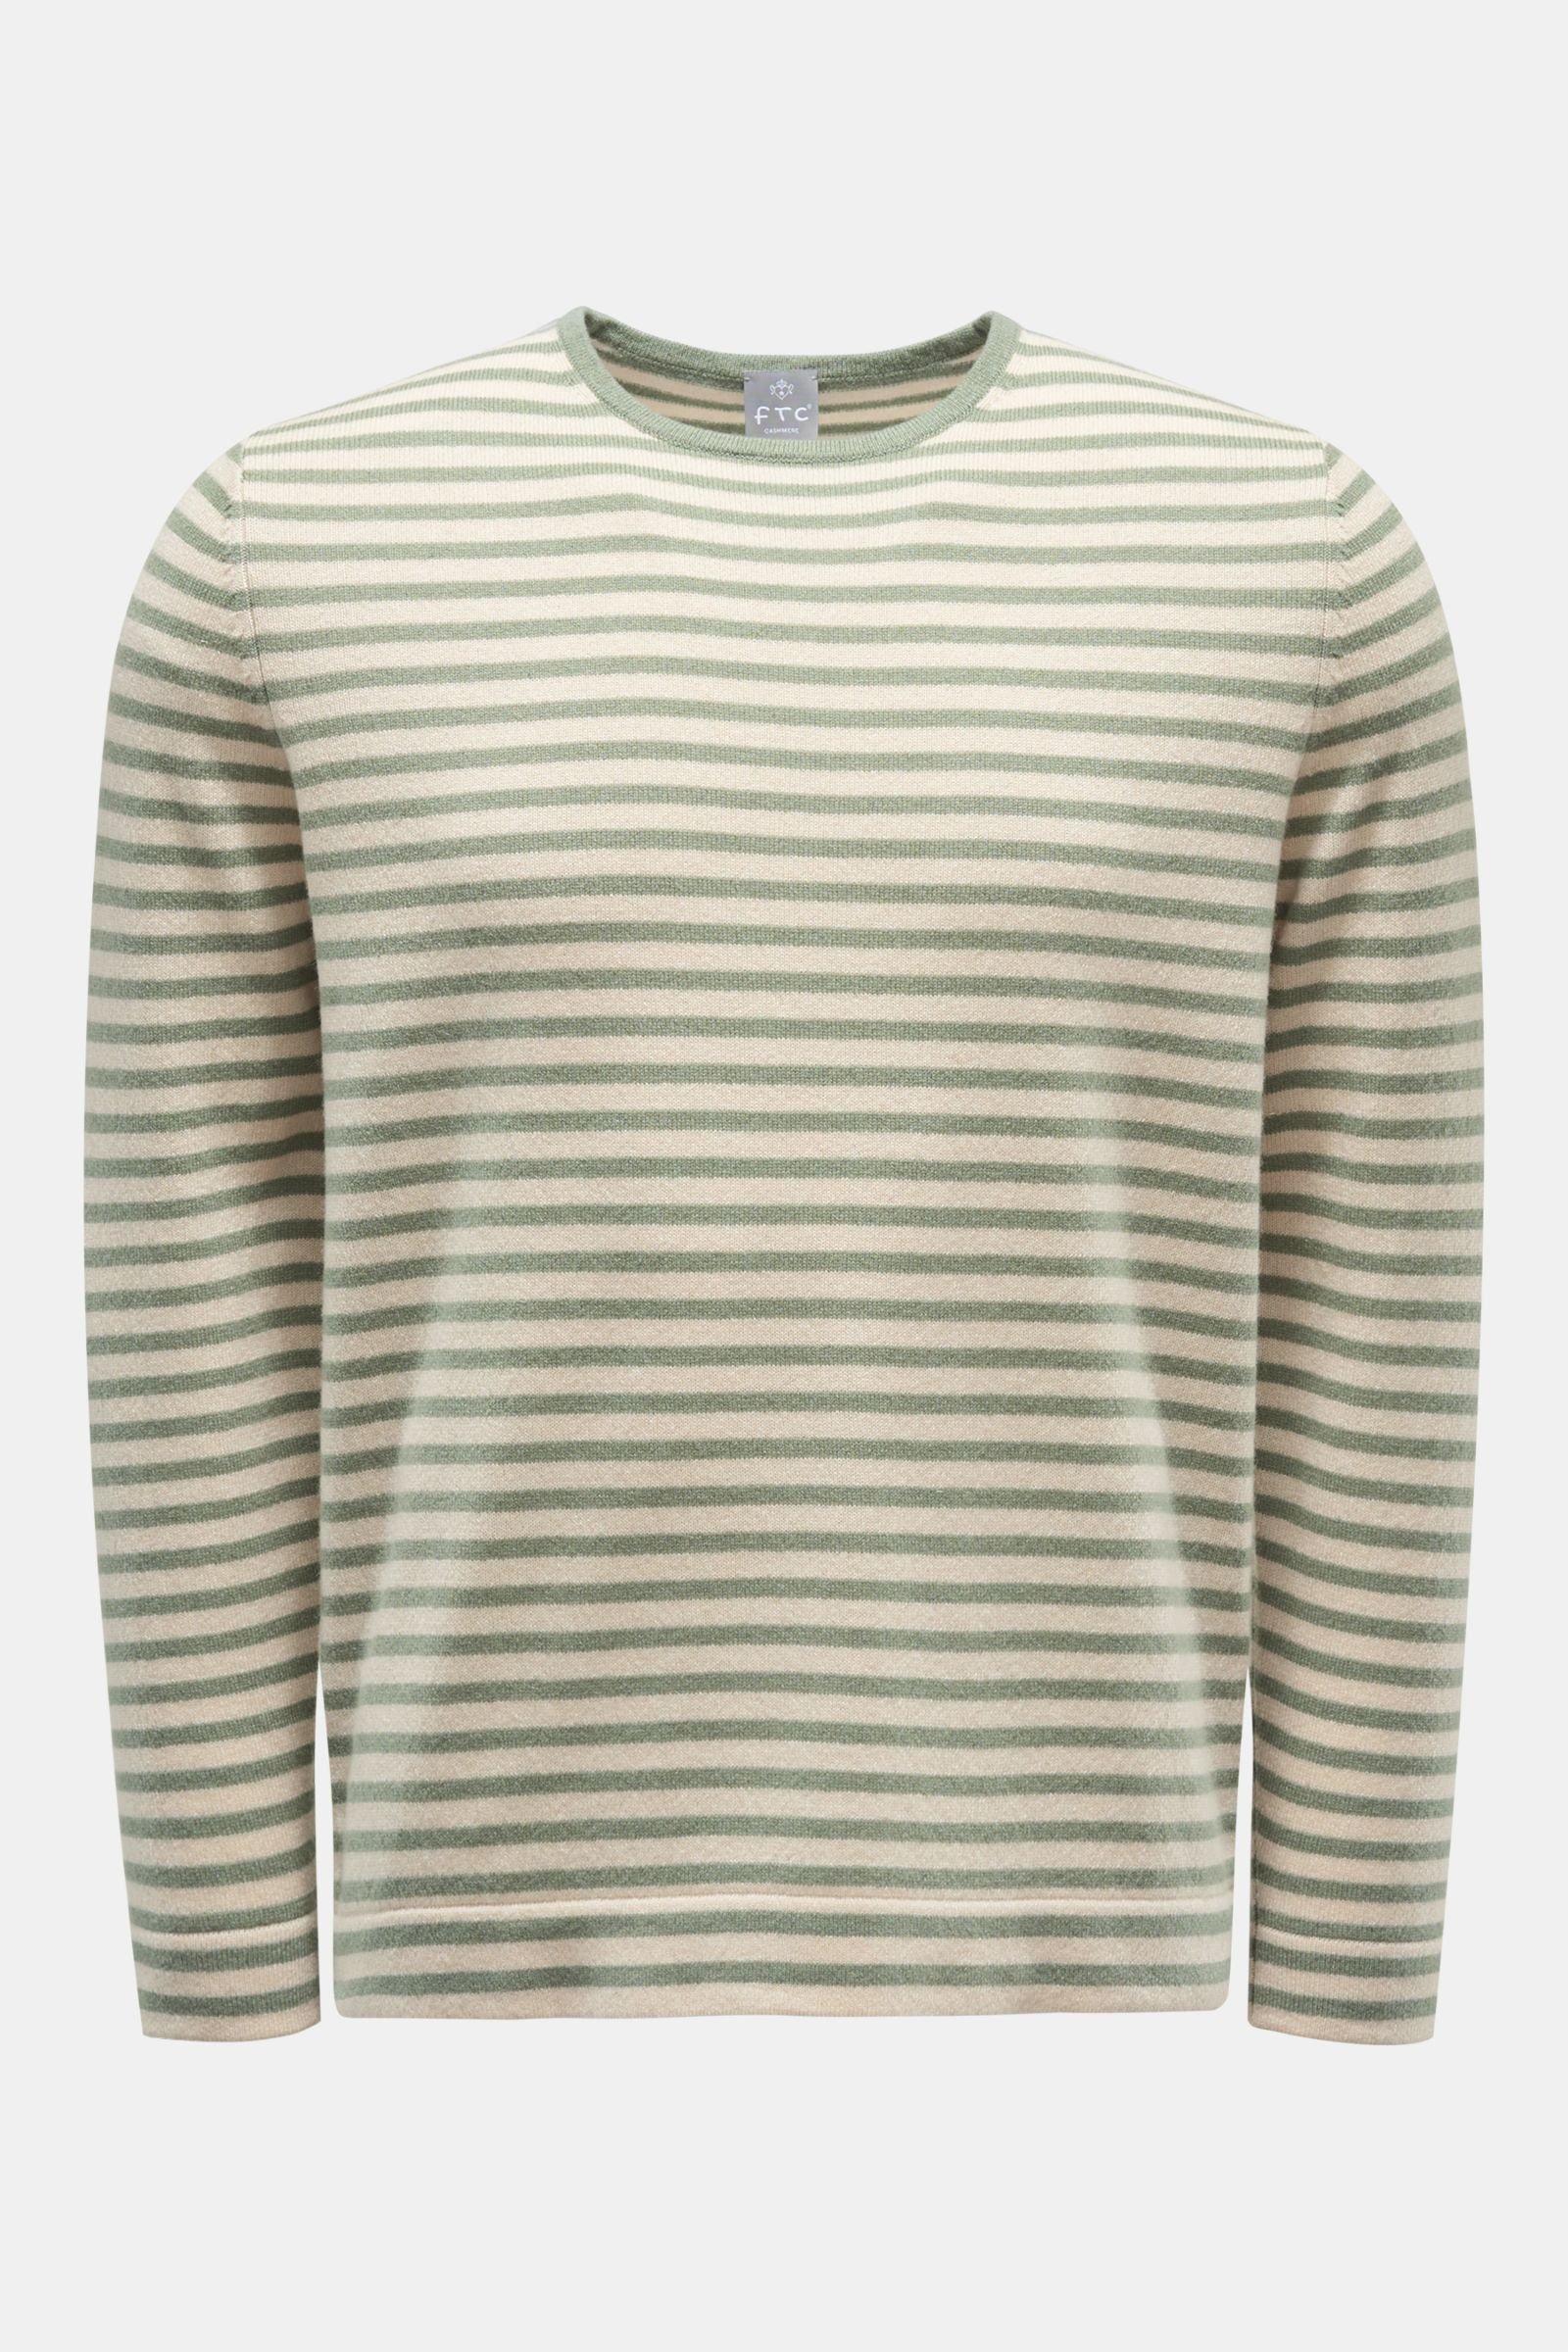 Cashmere crew neck jumper grey-green/beige striped